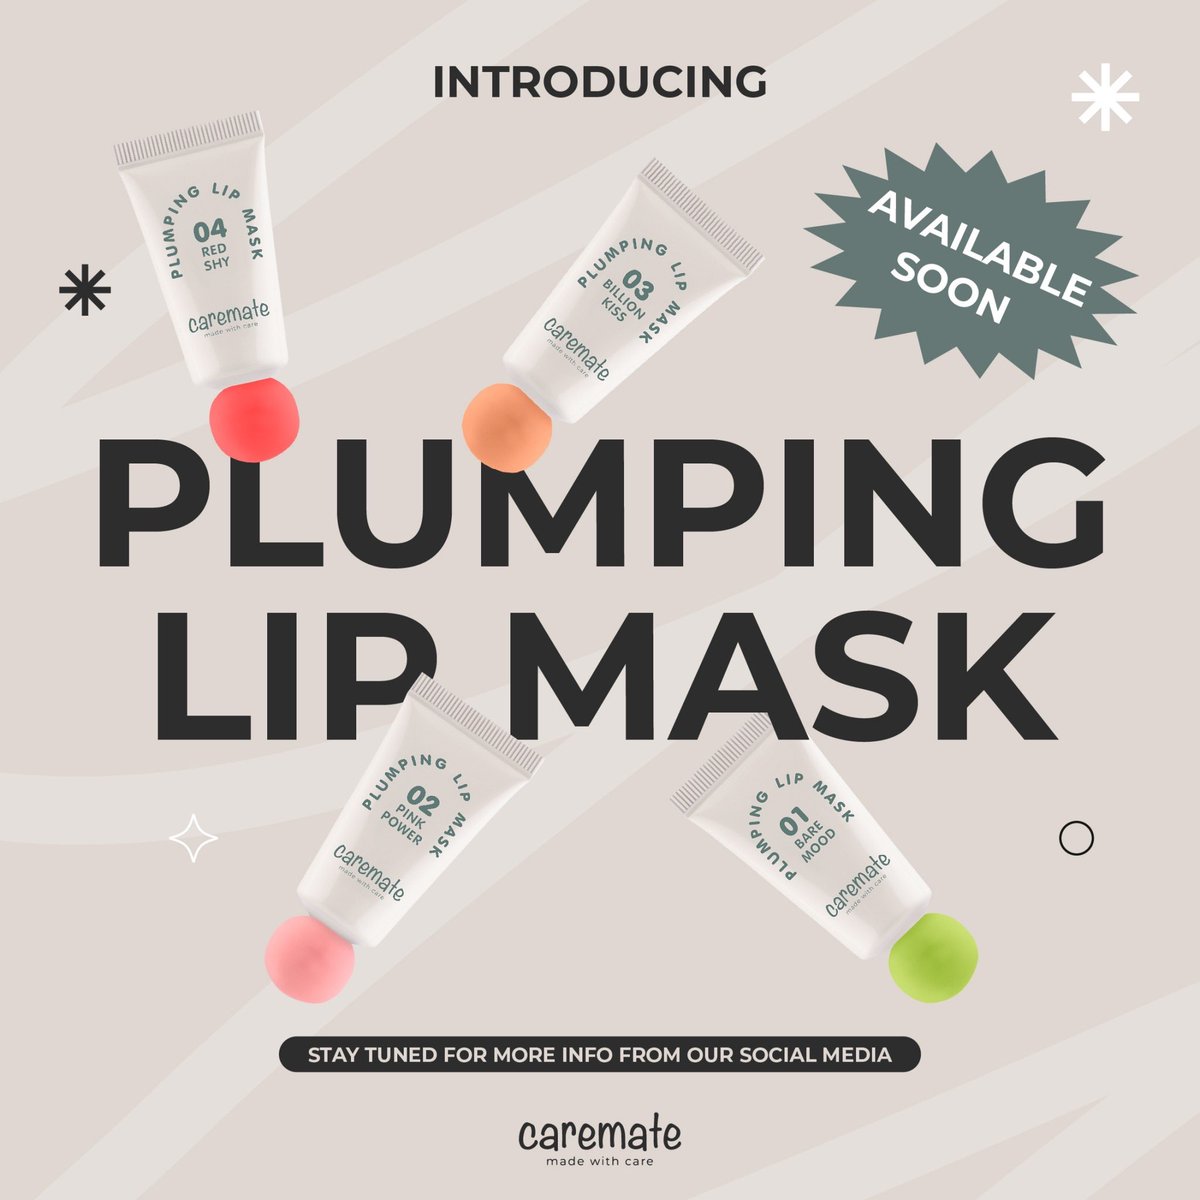 เพื่อนๆ ชาวแคร์เมทพร้อมฟังข่าวดีกันหรือยังครับ 👀🤍✨ เตรียมตัวพบกับผลิตภัณฑ์ใหม่ล่าสุดจากเรา กับ ‘Caremate Plumping Lip Mask’ ลิปมาสก์สุดฉ่ำที่จะมอบการบำรุงริมฝีปากขั้นสุด มาพร้อมกับสีสดใสที่จะเพิ่มความวาวให้กับริมฝีปากคุณ